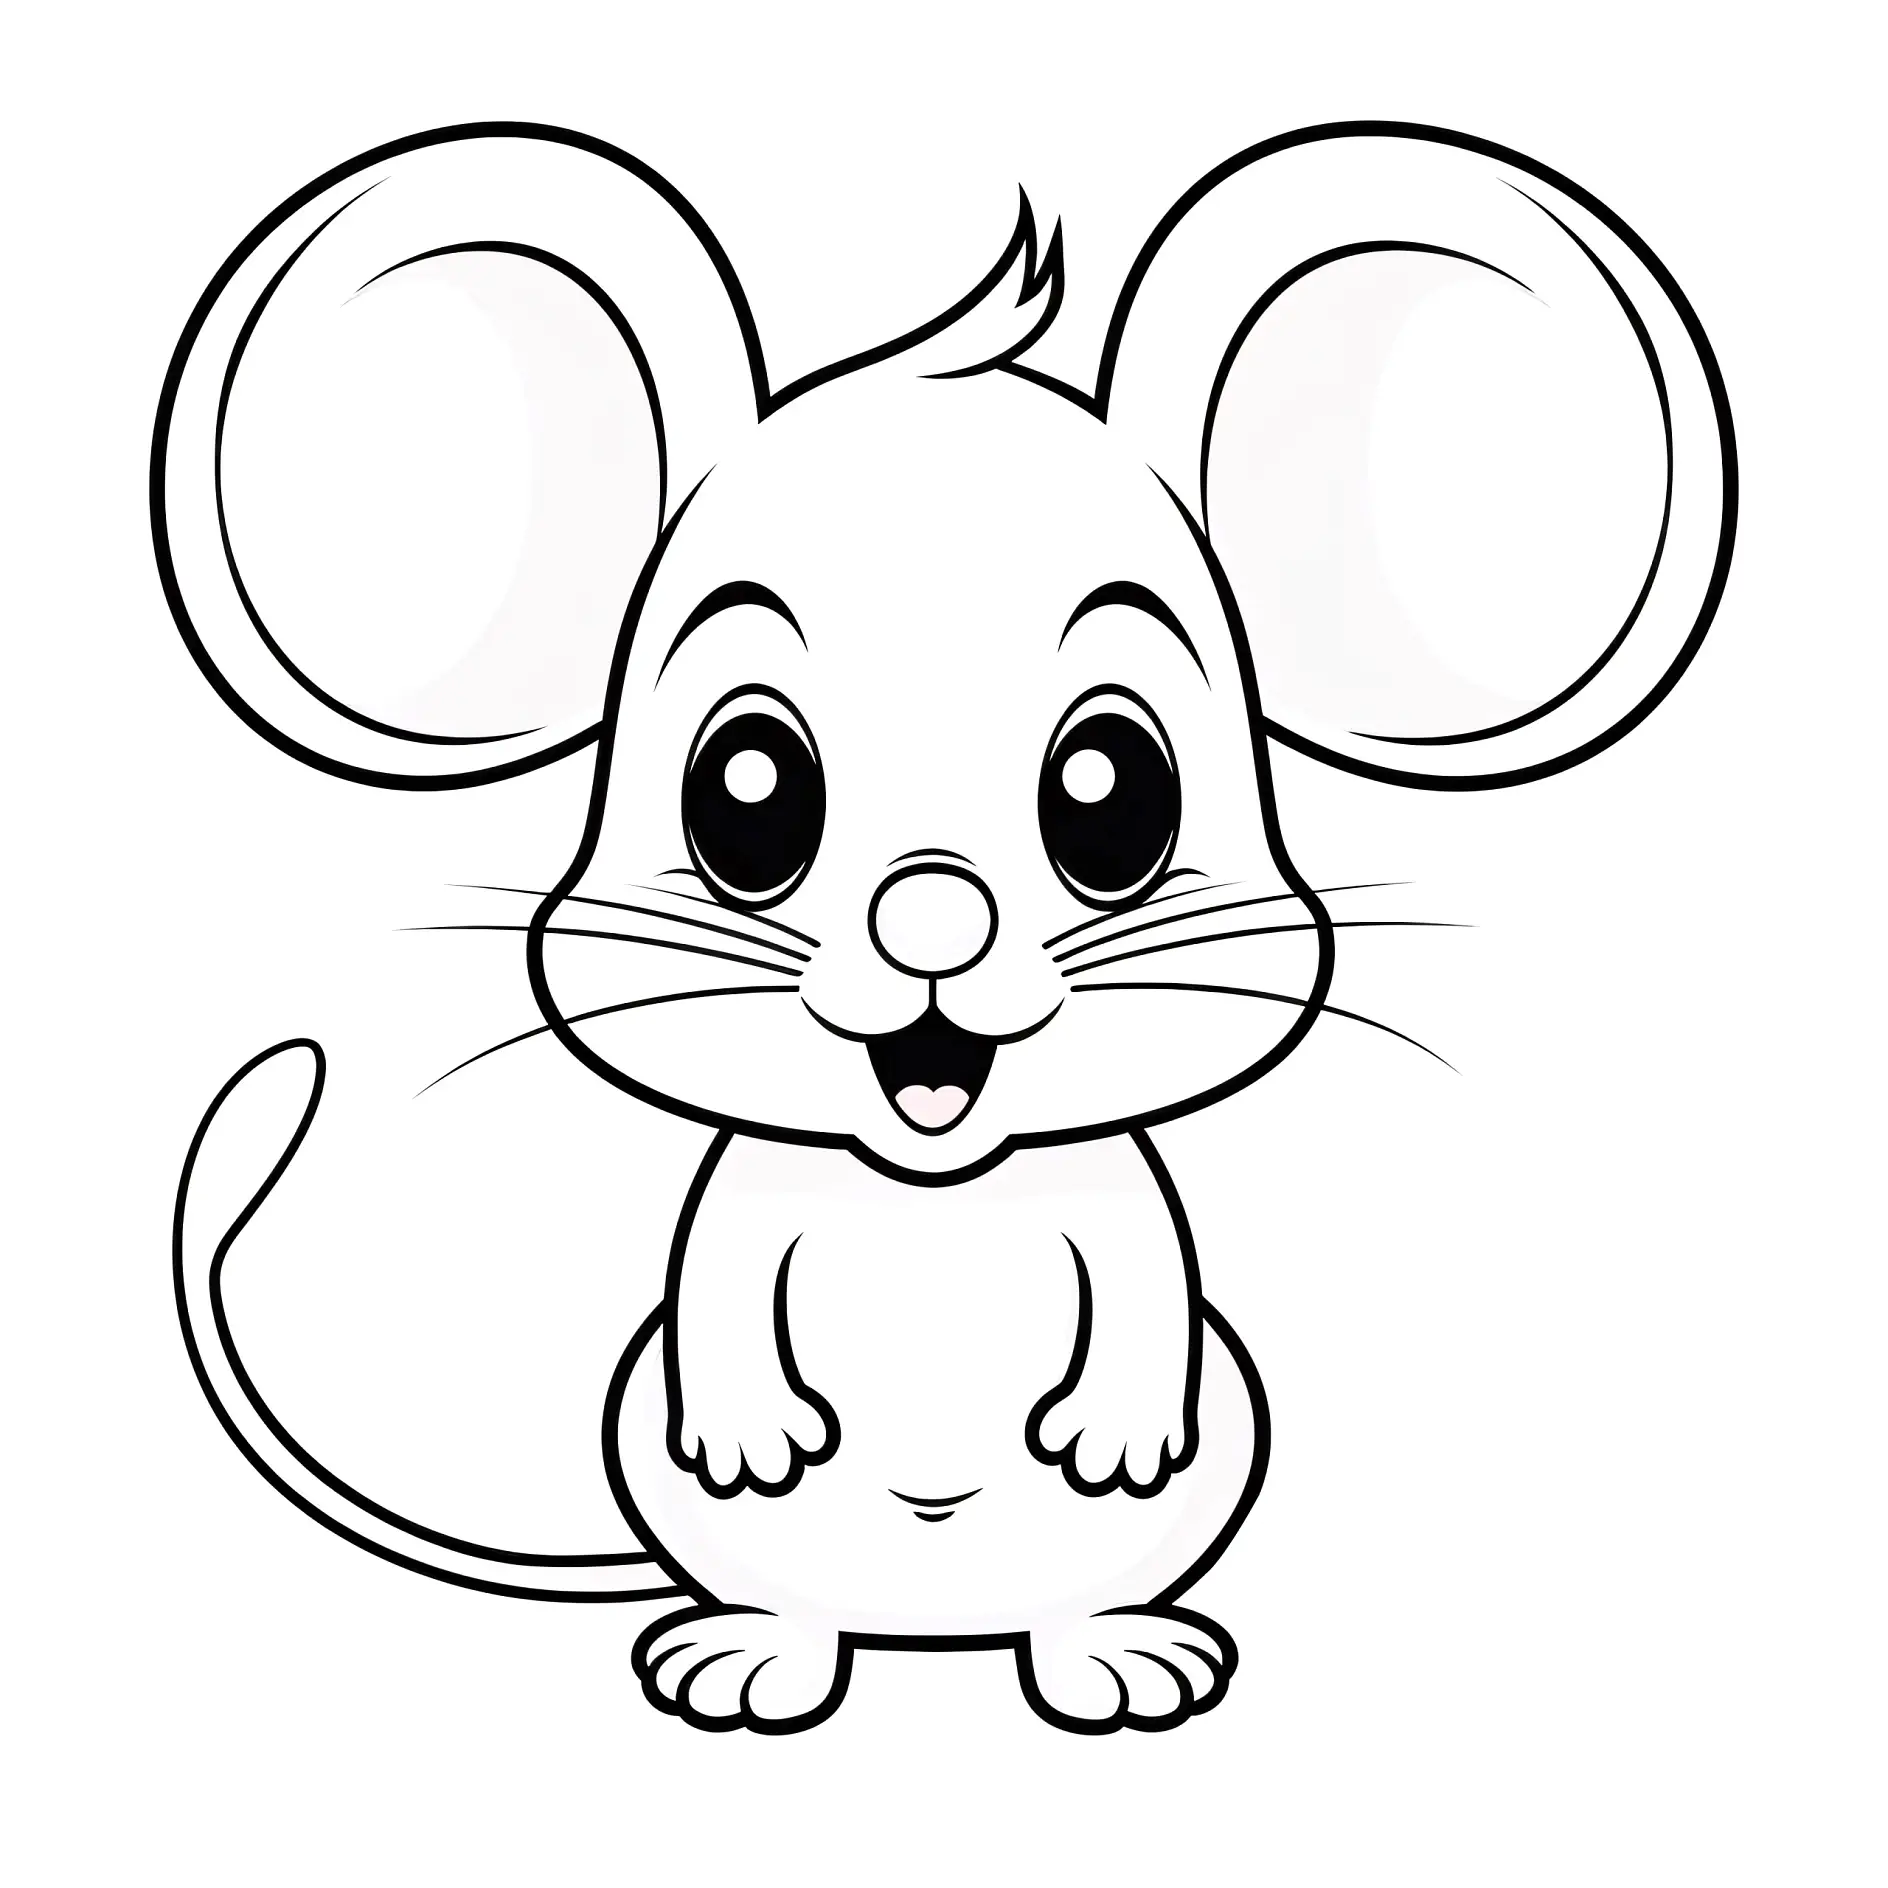 Ausmalbild kleine Maus frontal mit strahlendem Lächeln